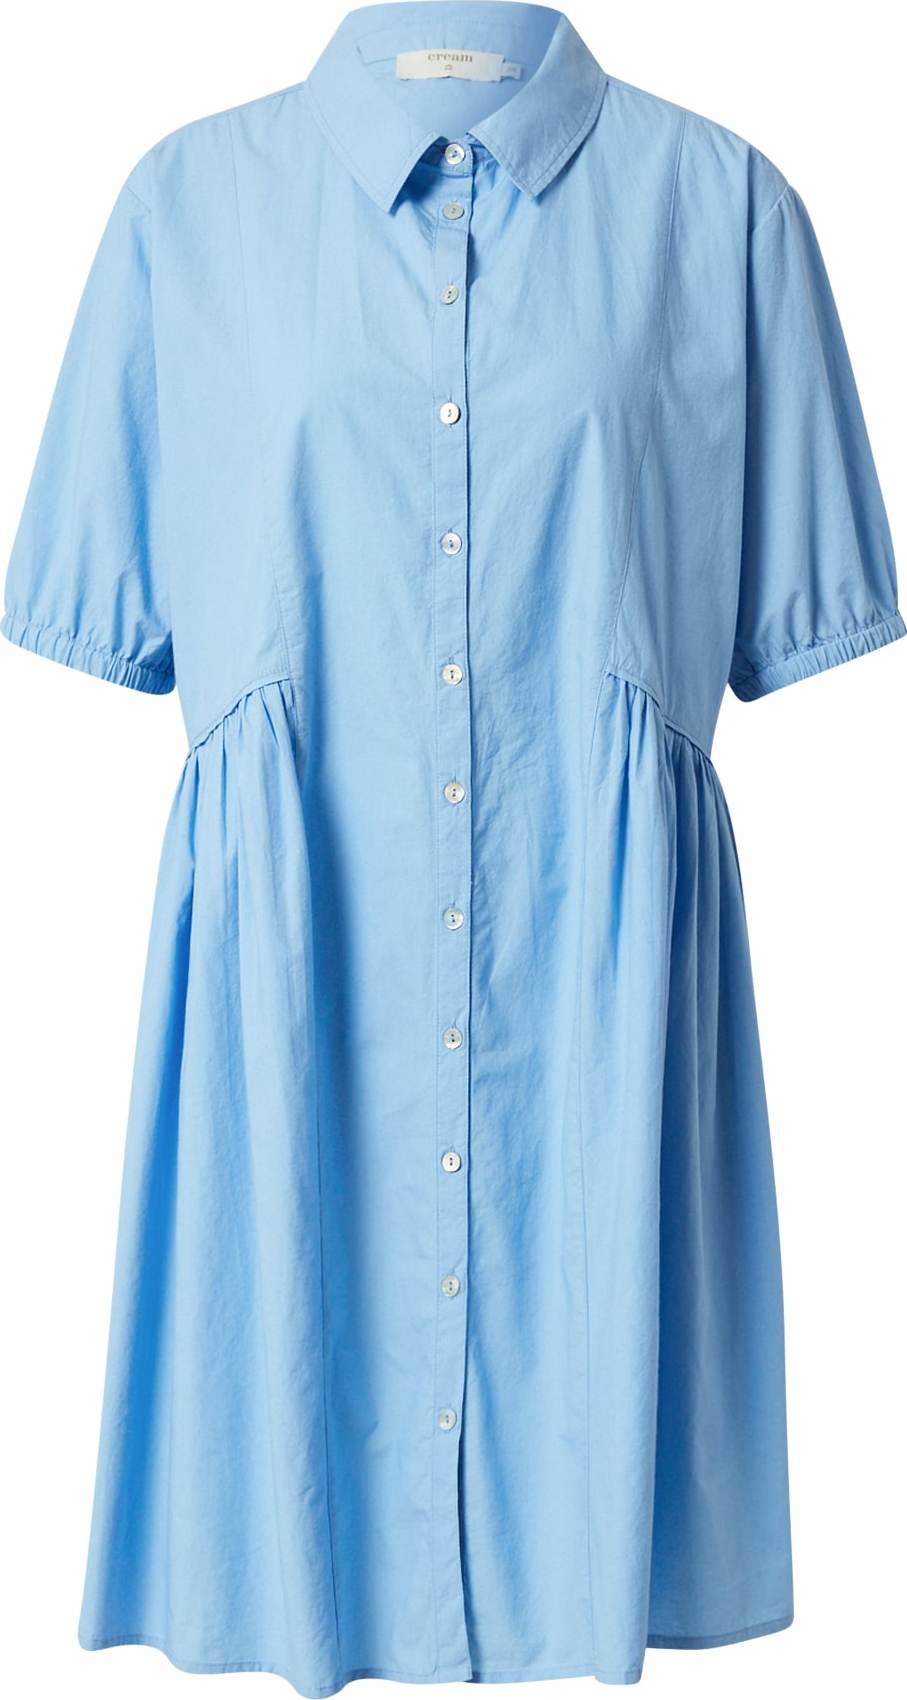 Cream Košilové šaty 'Humla' nebeská modř